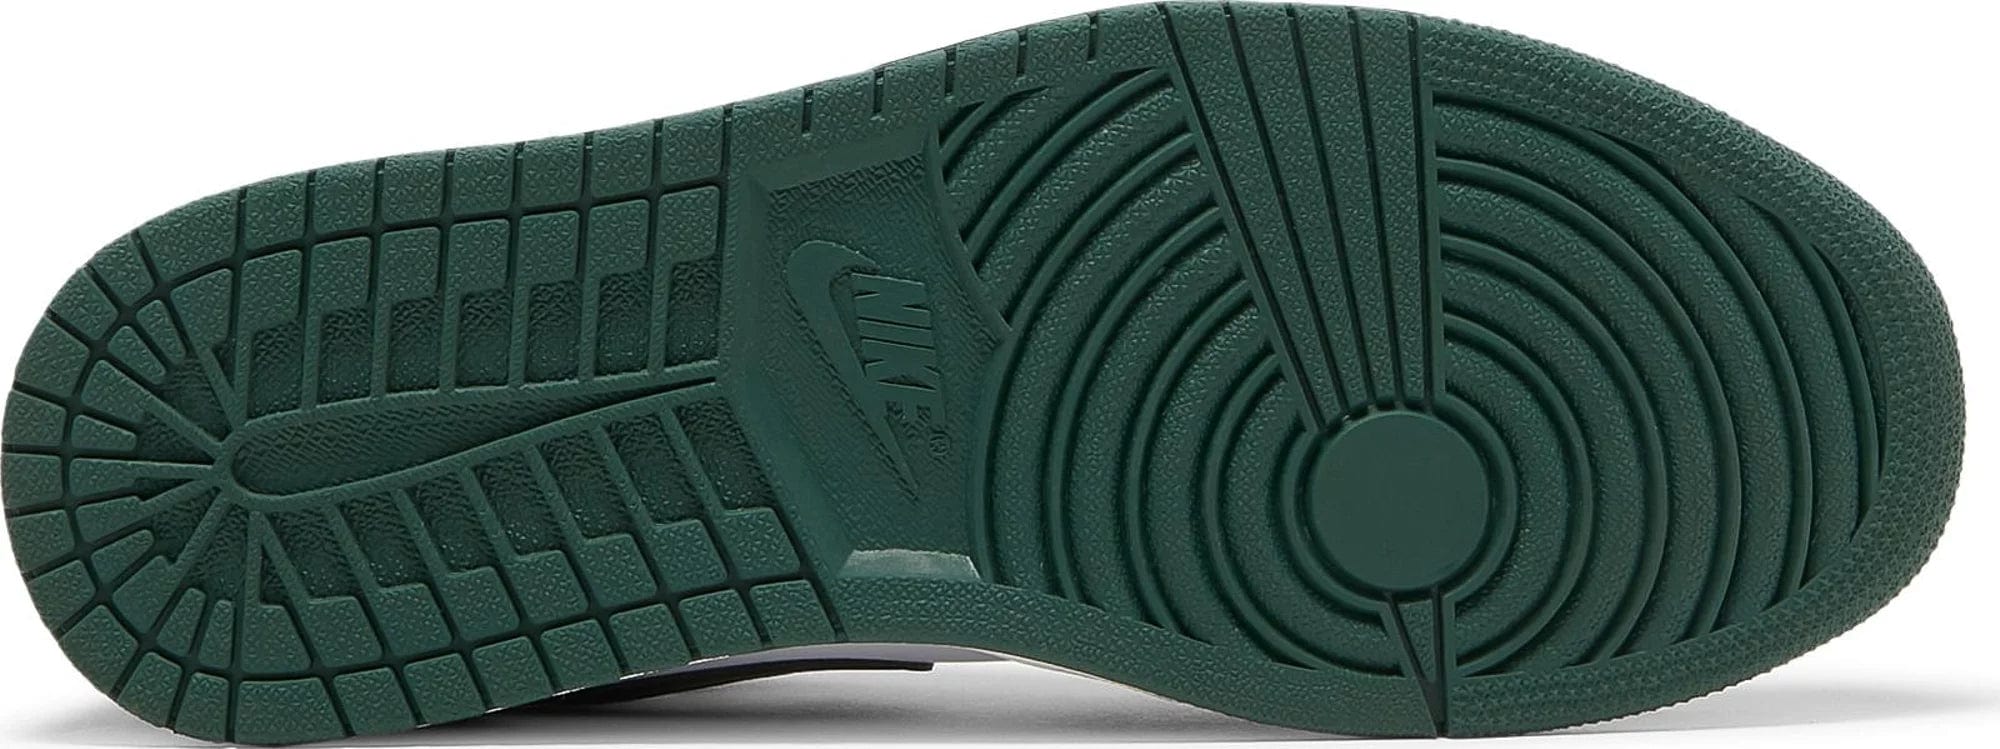 sneakers Nike Air Jordan 1 Low Green Toe Men's